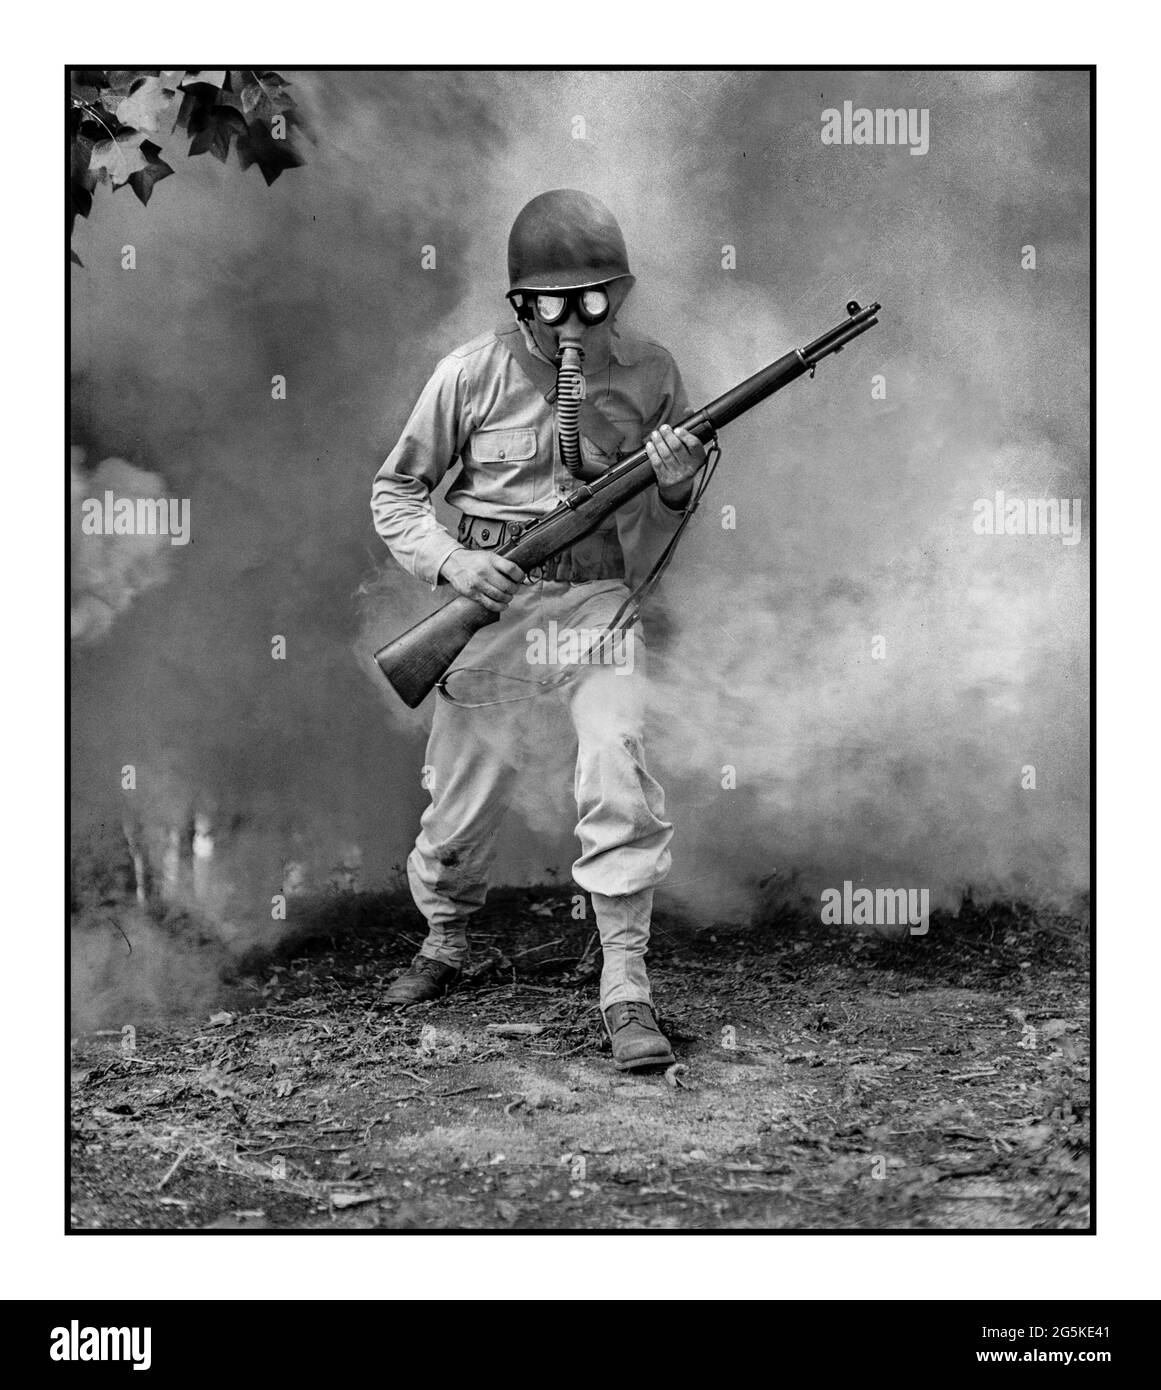 Addestramento all'ATTACCO DI GAS della seconda guerra mondiale a Fort Belvoir, Virginia. Sergente George Camblair imparare come usare una maschera a gas in una pratica gas / cortina fumogena Jack Delano, fotografo 1942 settembre Stati Uniti--Virginia--Fairfax County--Fort Belvoir Foto Stock